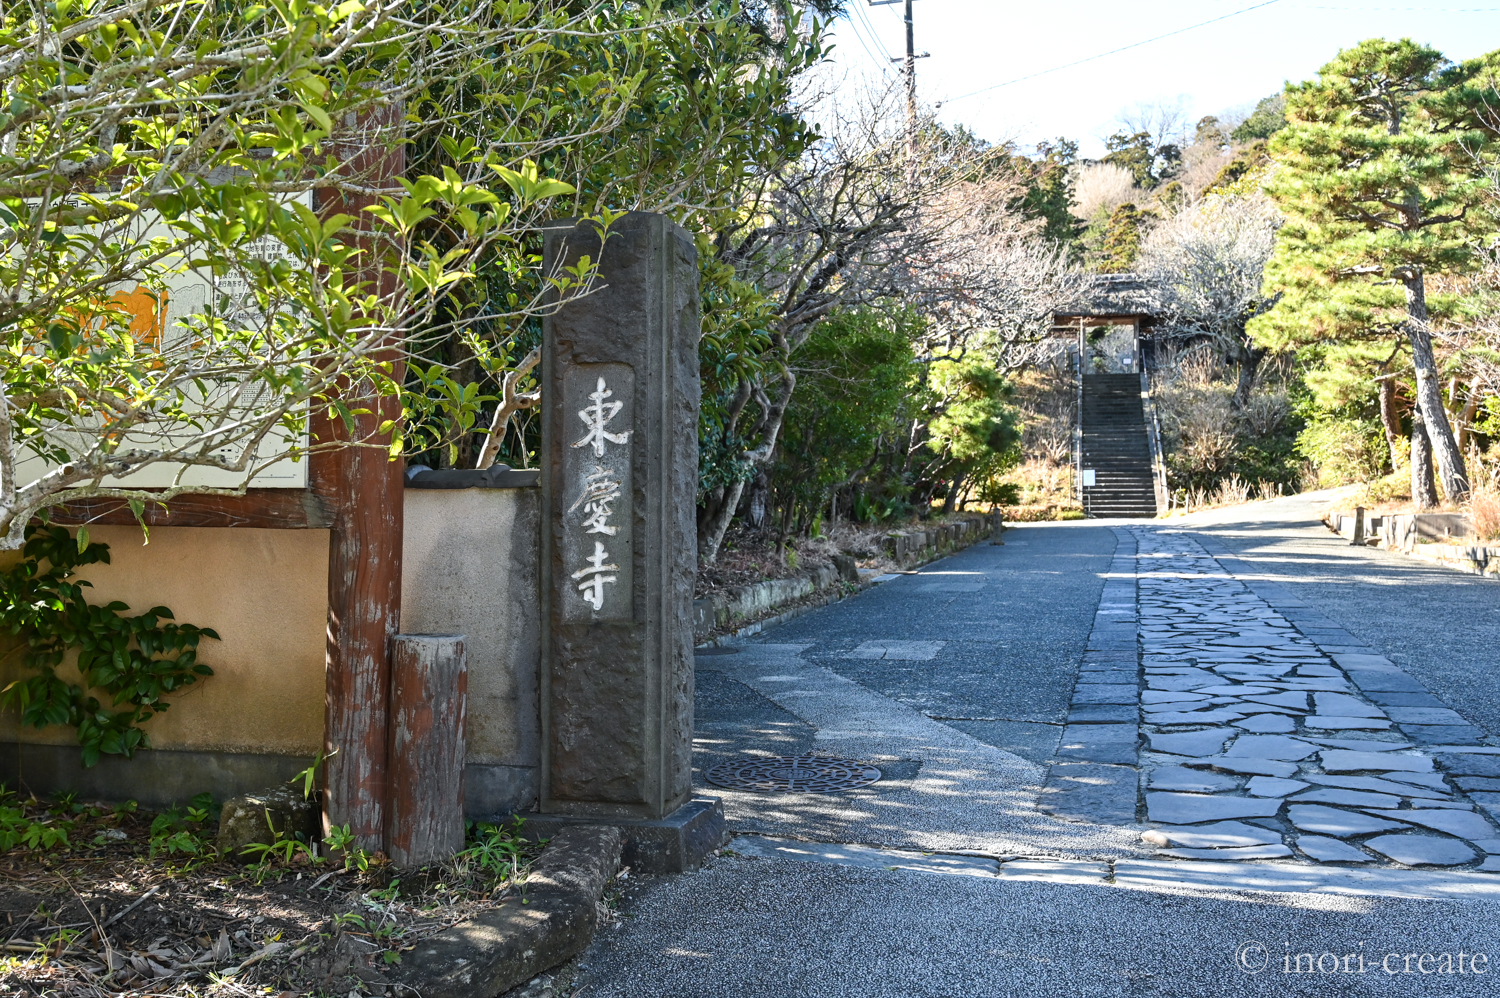 1月末の鎌倉東慶寺山門。北条時宗夫人・覚山志道尼が開創した臨済宗の寺院。